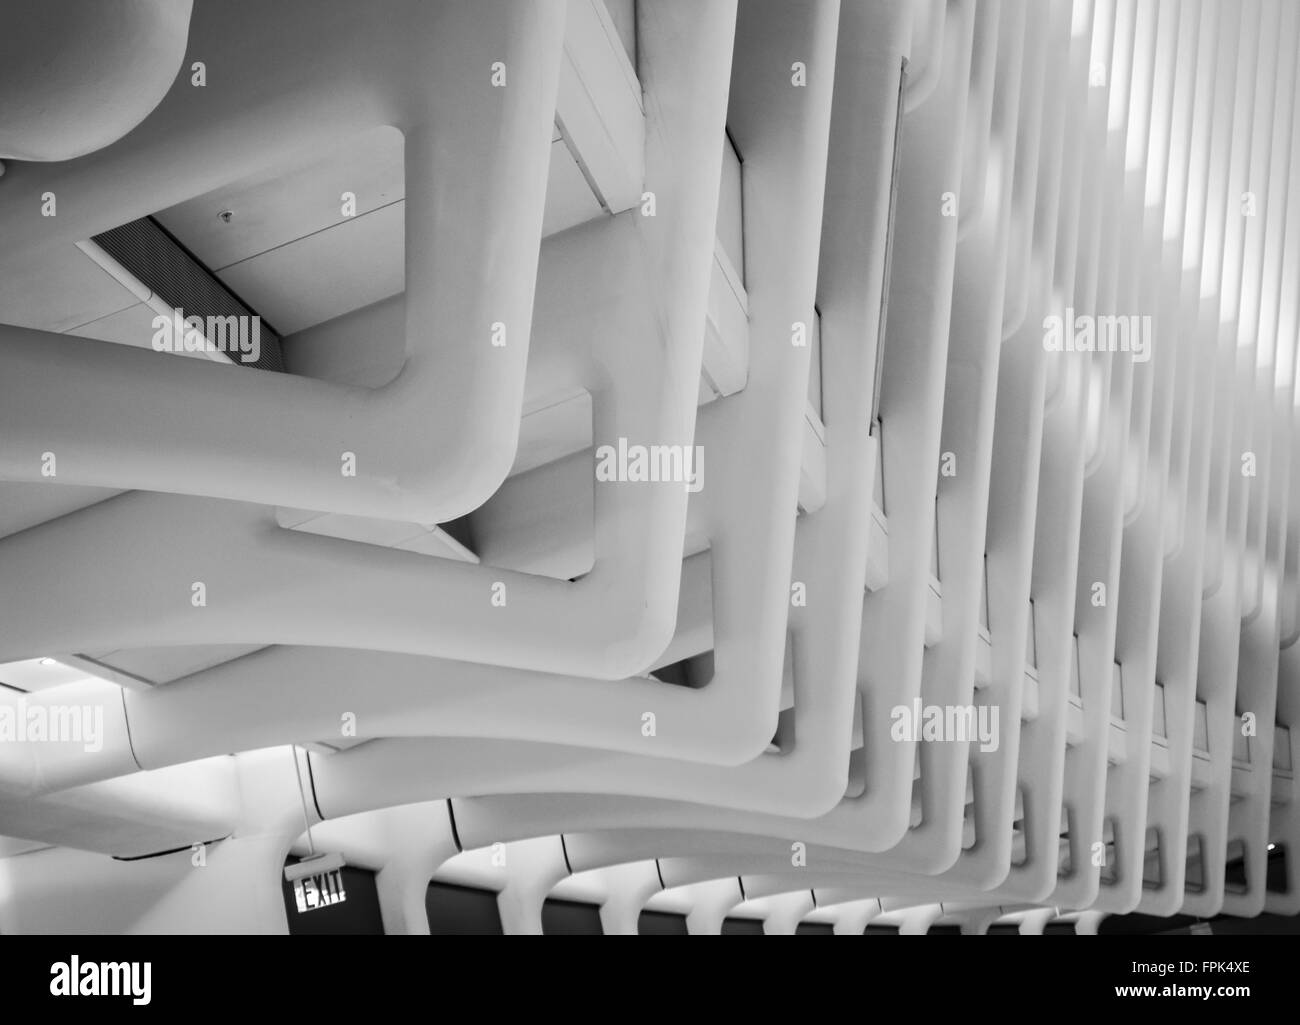 Gros plan du détail architectural à l'intérieur de l'Oculus du World Trade Center Transportation Hub, conçu par Calatrava. Banque D'Images